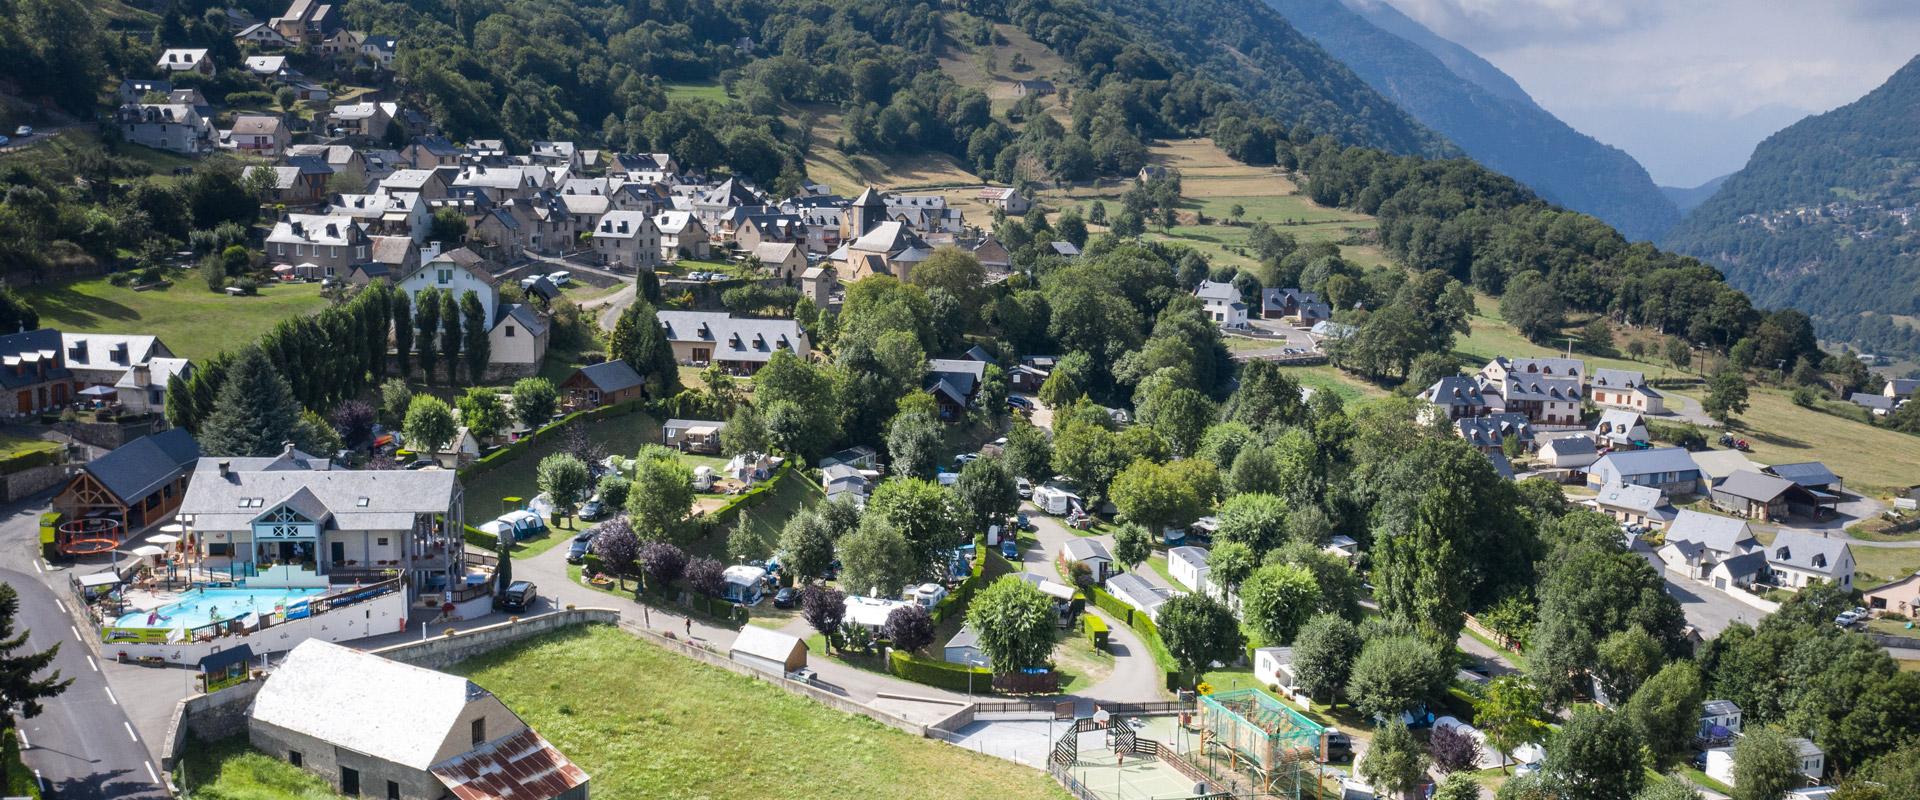 Situation du Camping à Luz Saint-Sauveur dans les Hautes-Pyrénées